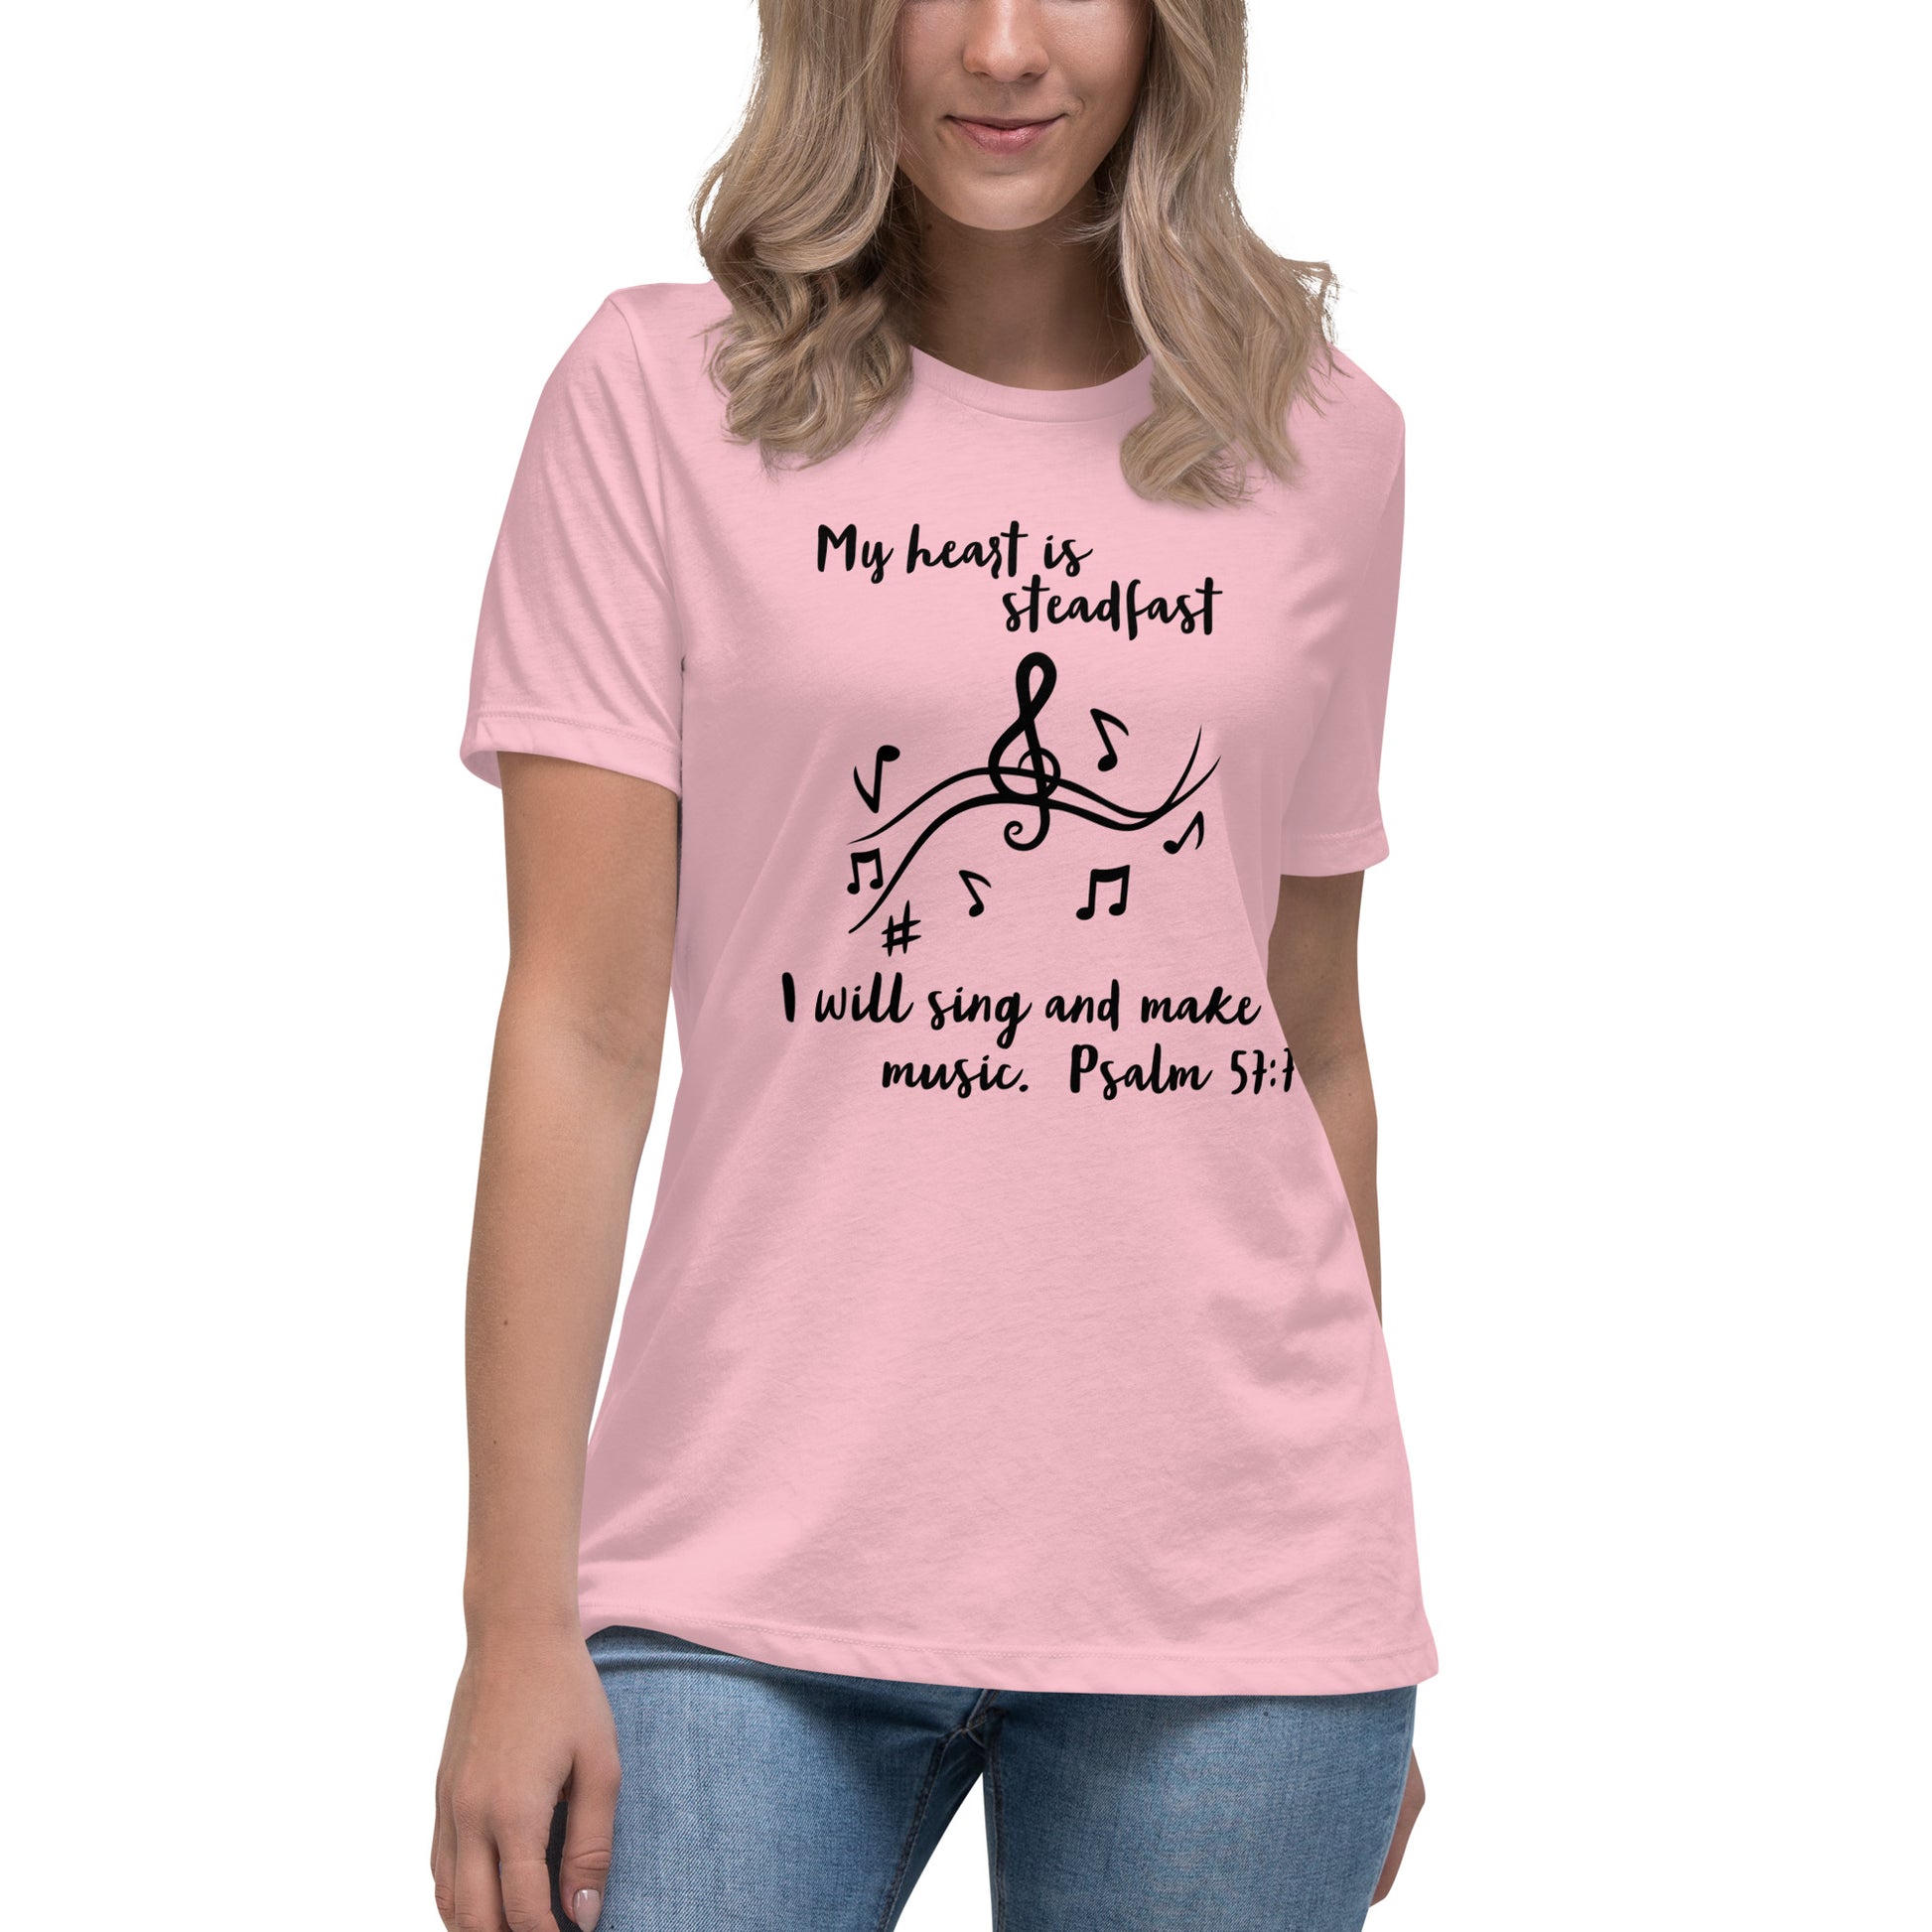 Light pink womens christian tee shirt